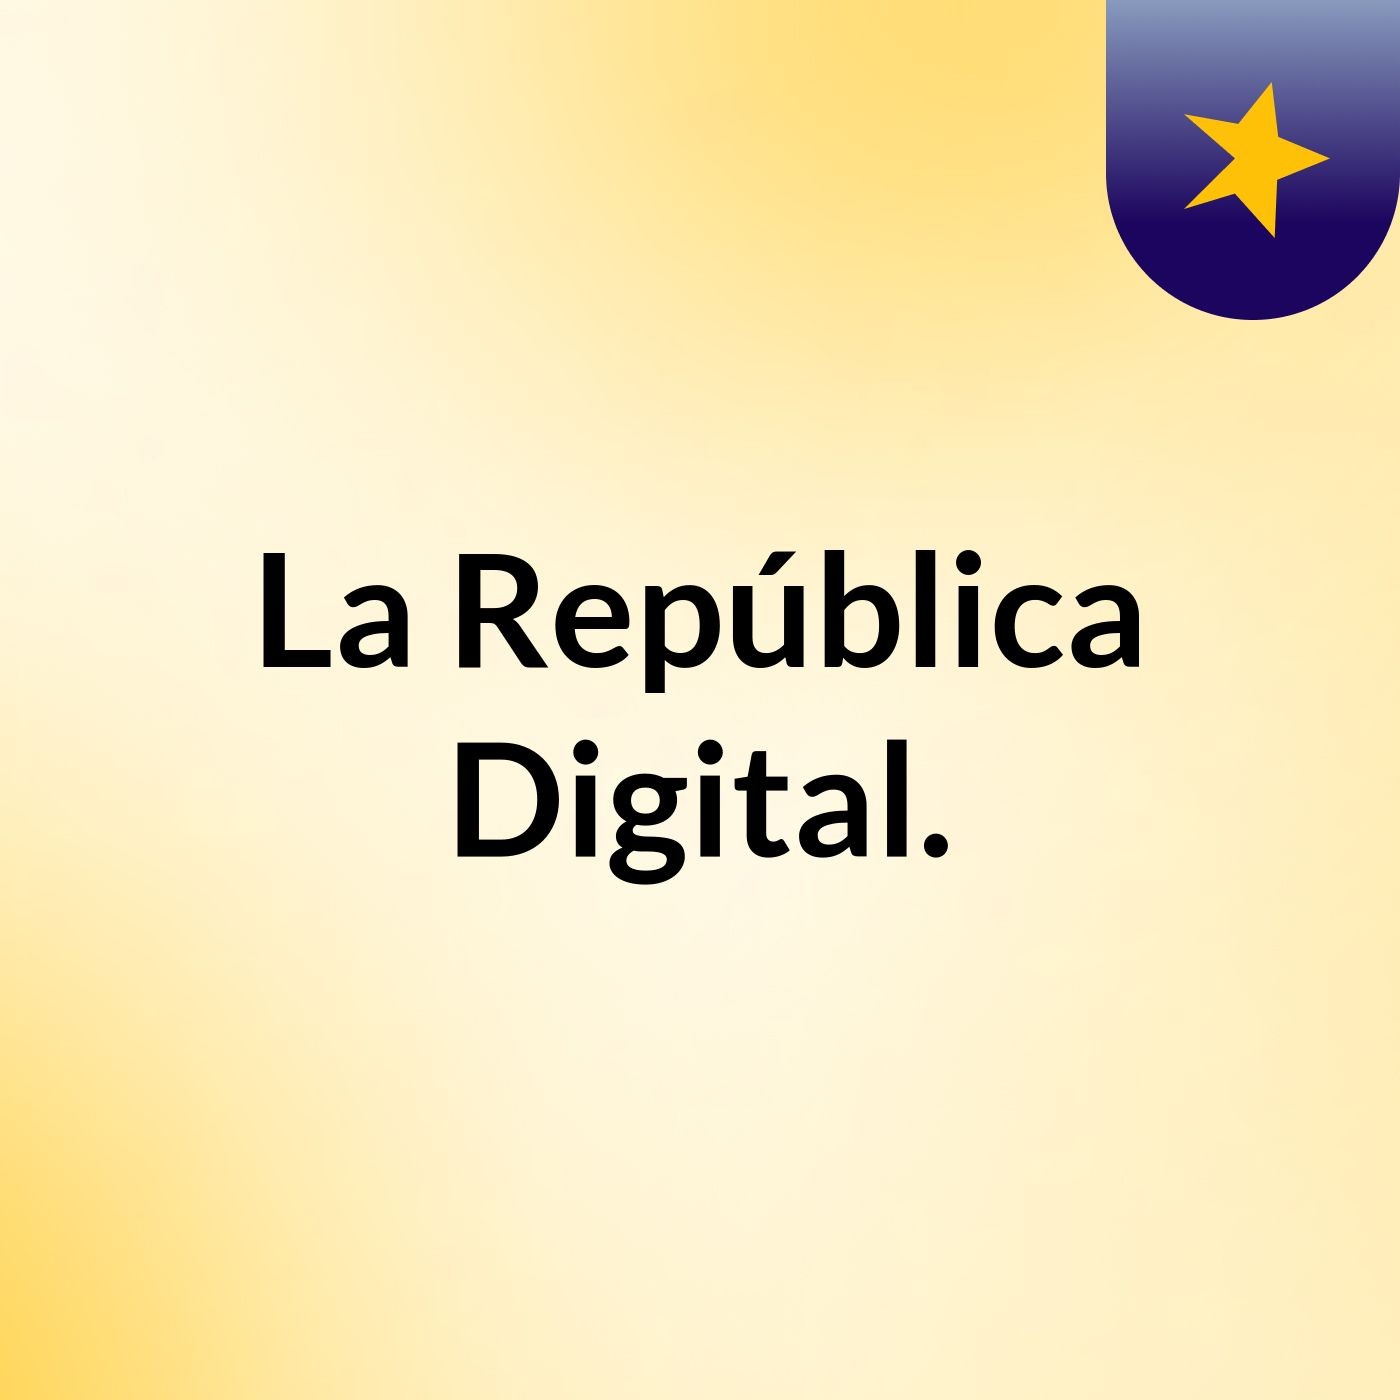 La República Digital.